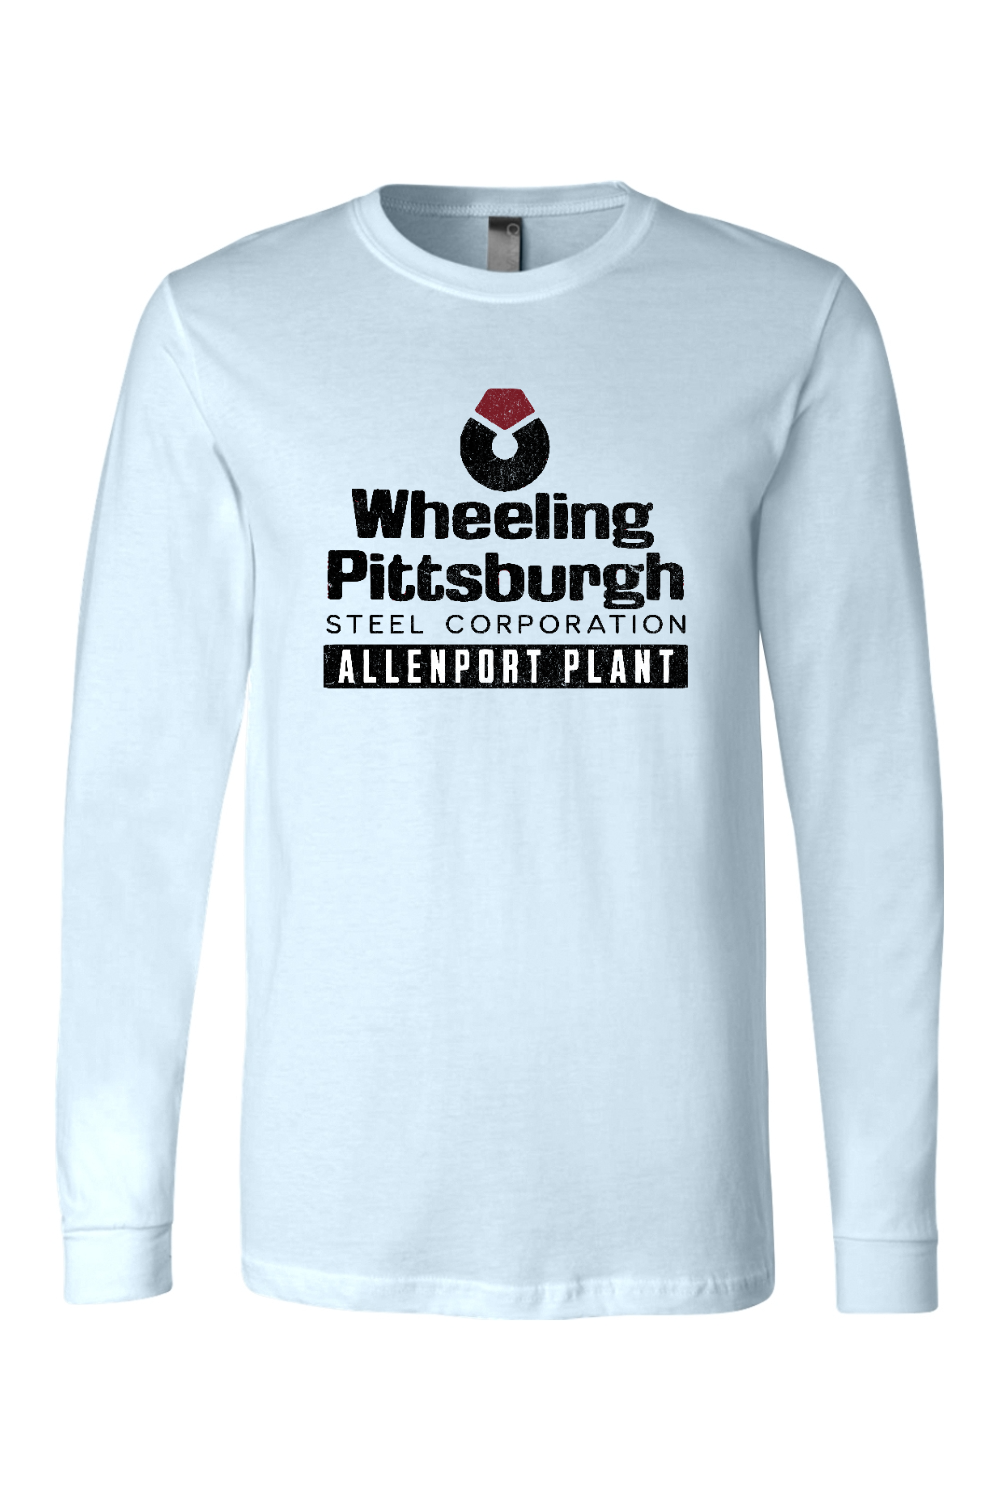 Wheeling Pittsburgh Steel - Allenport Plant - Long Sleeve Tee - Yinzylvania